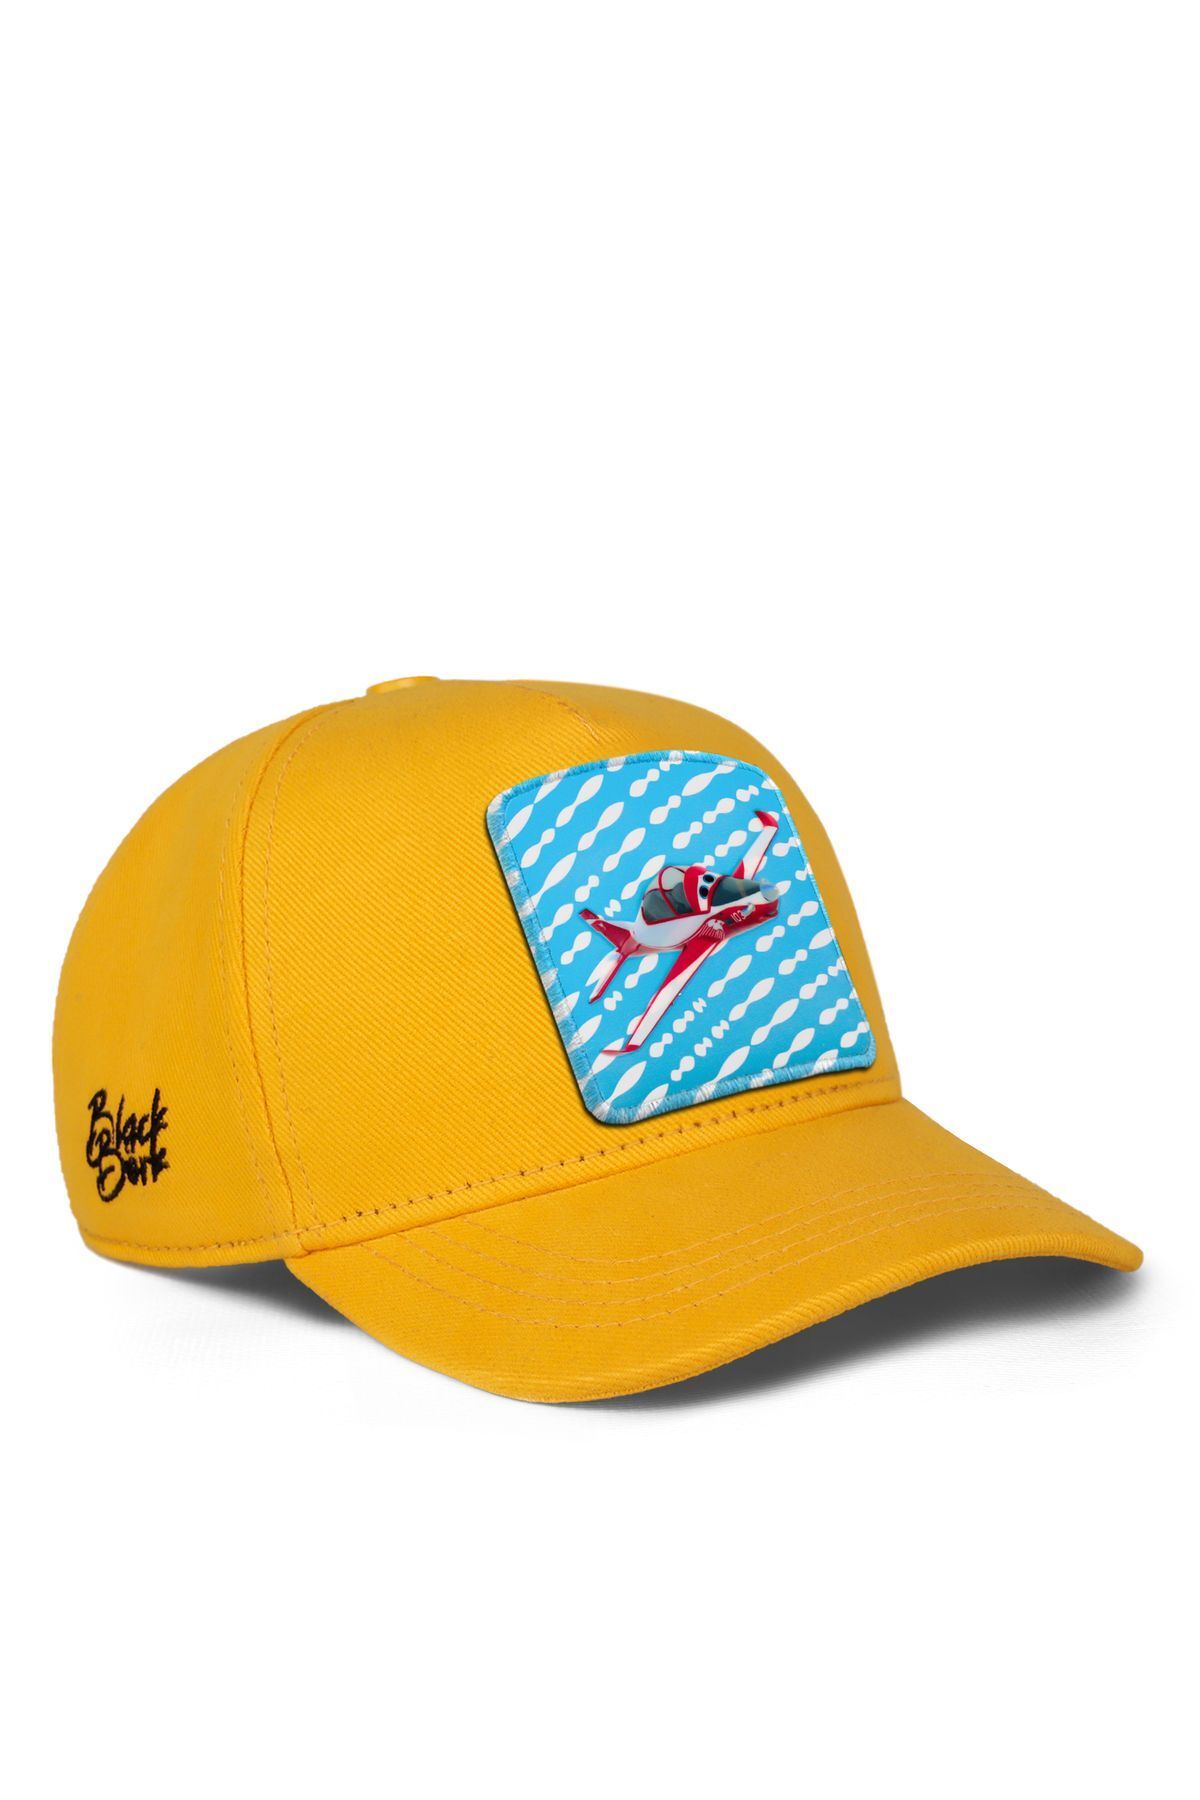 BlackBörk V1 Baseball Kararlı Hürkuş Lisanlı Sarı Çocuk Şapka